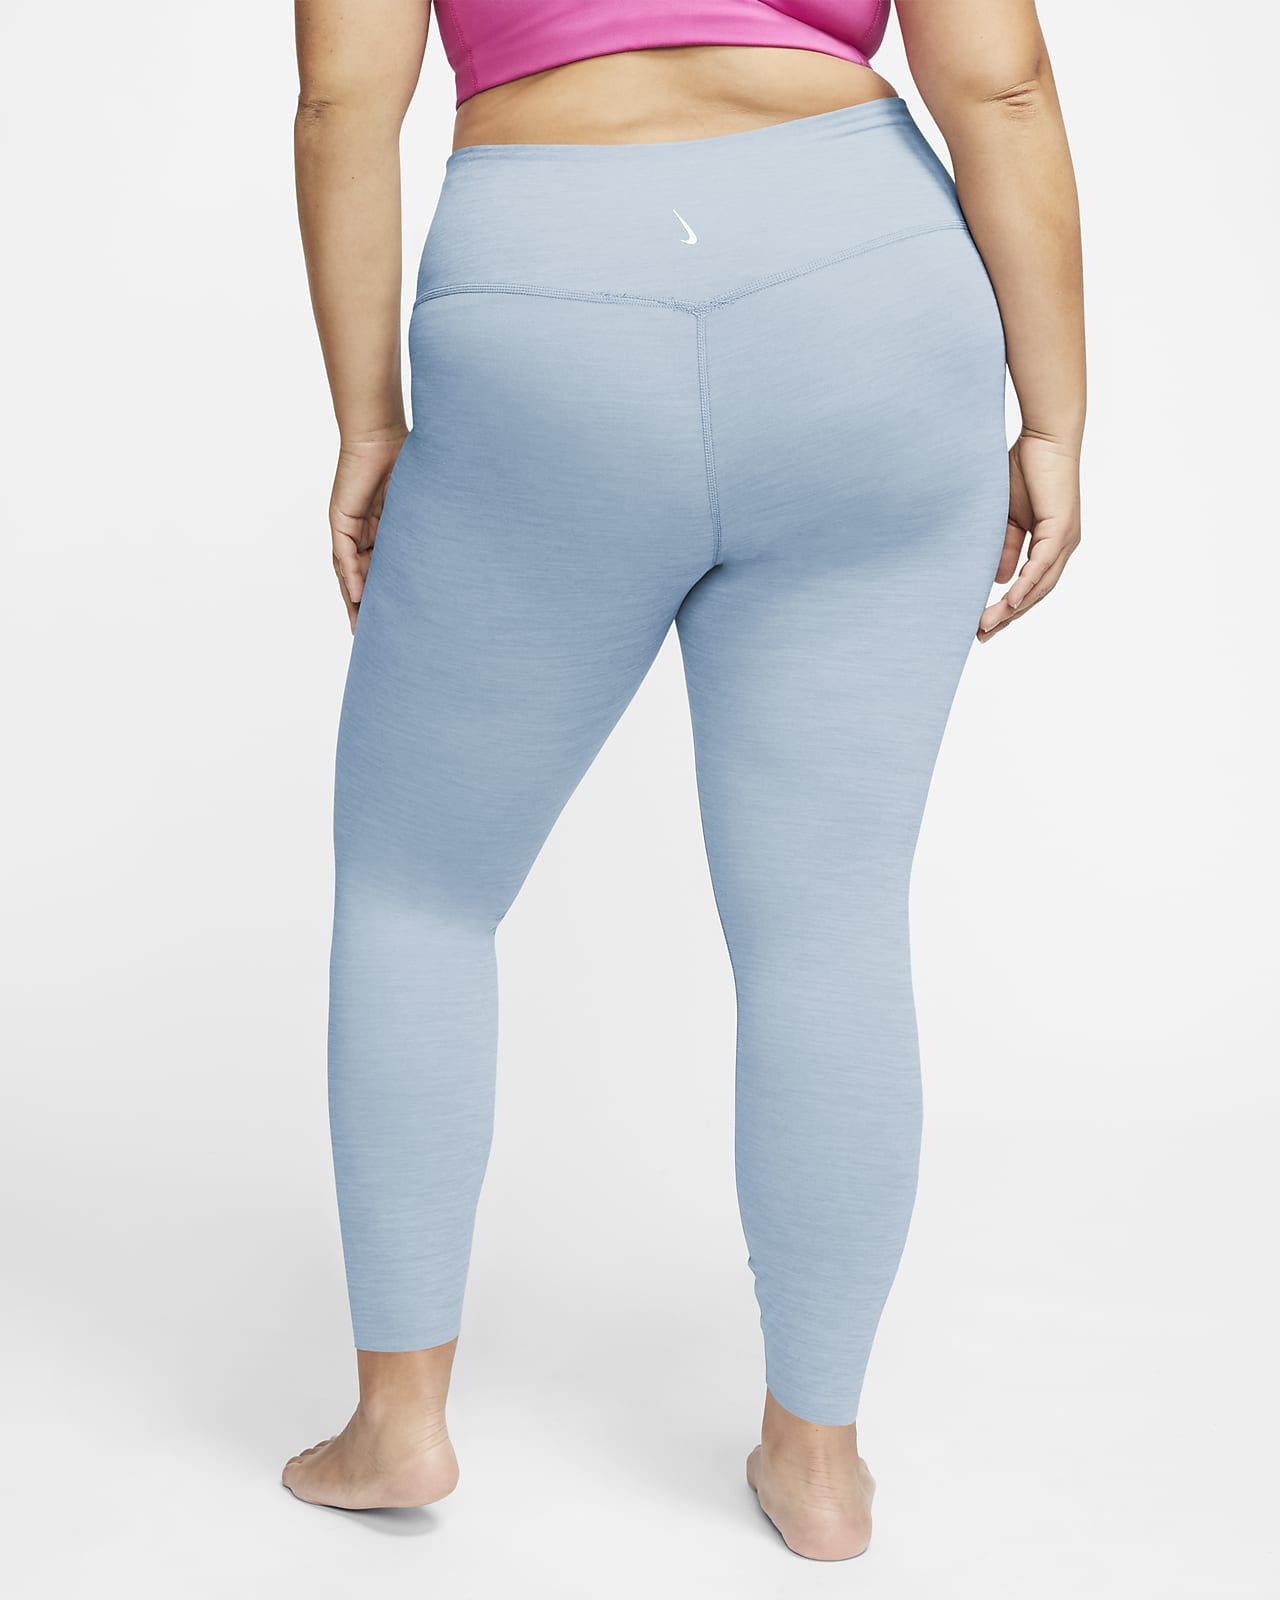 Nike Plus Size Yoga Pants